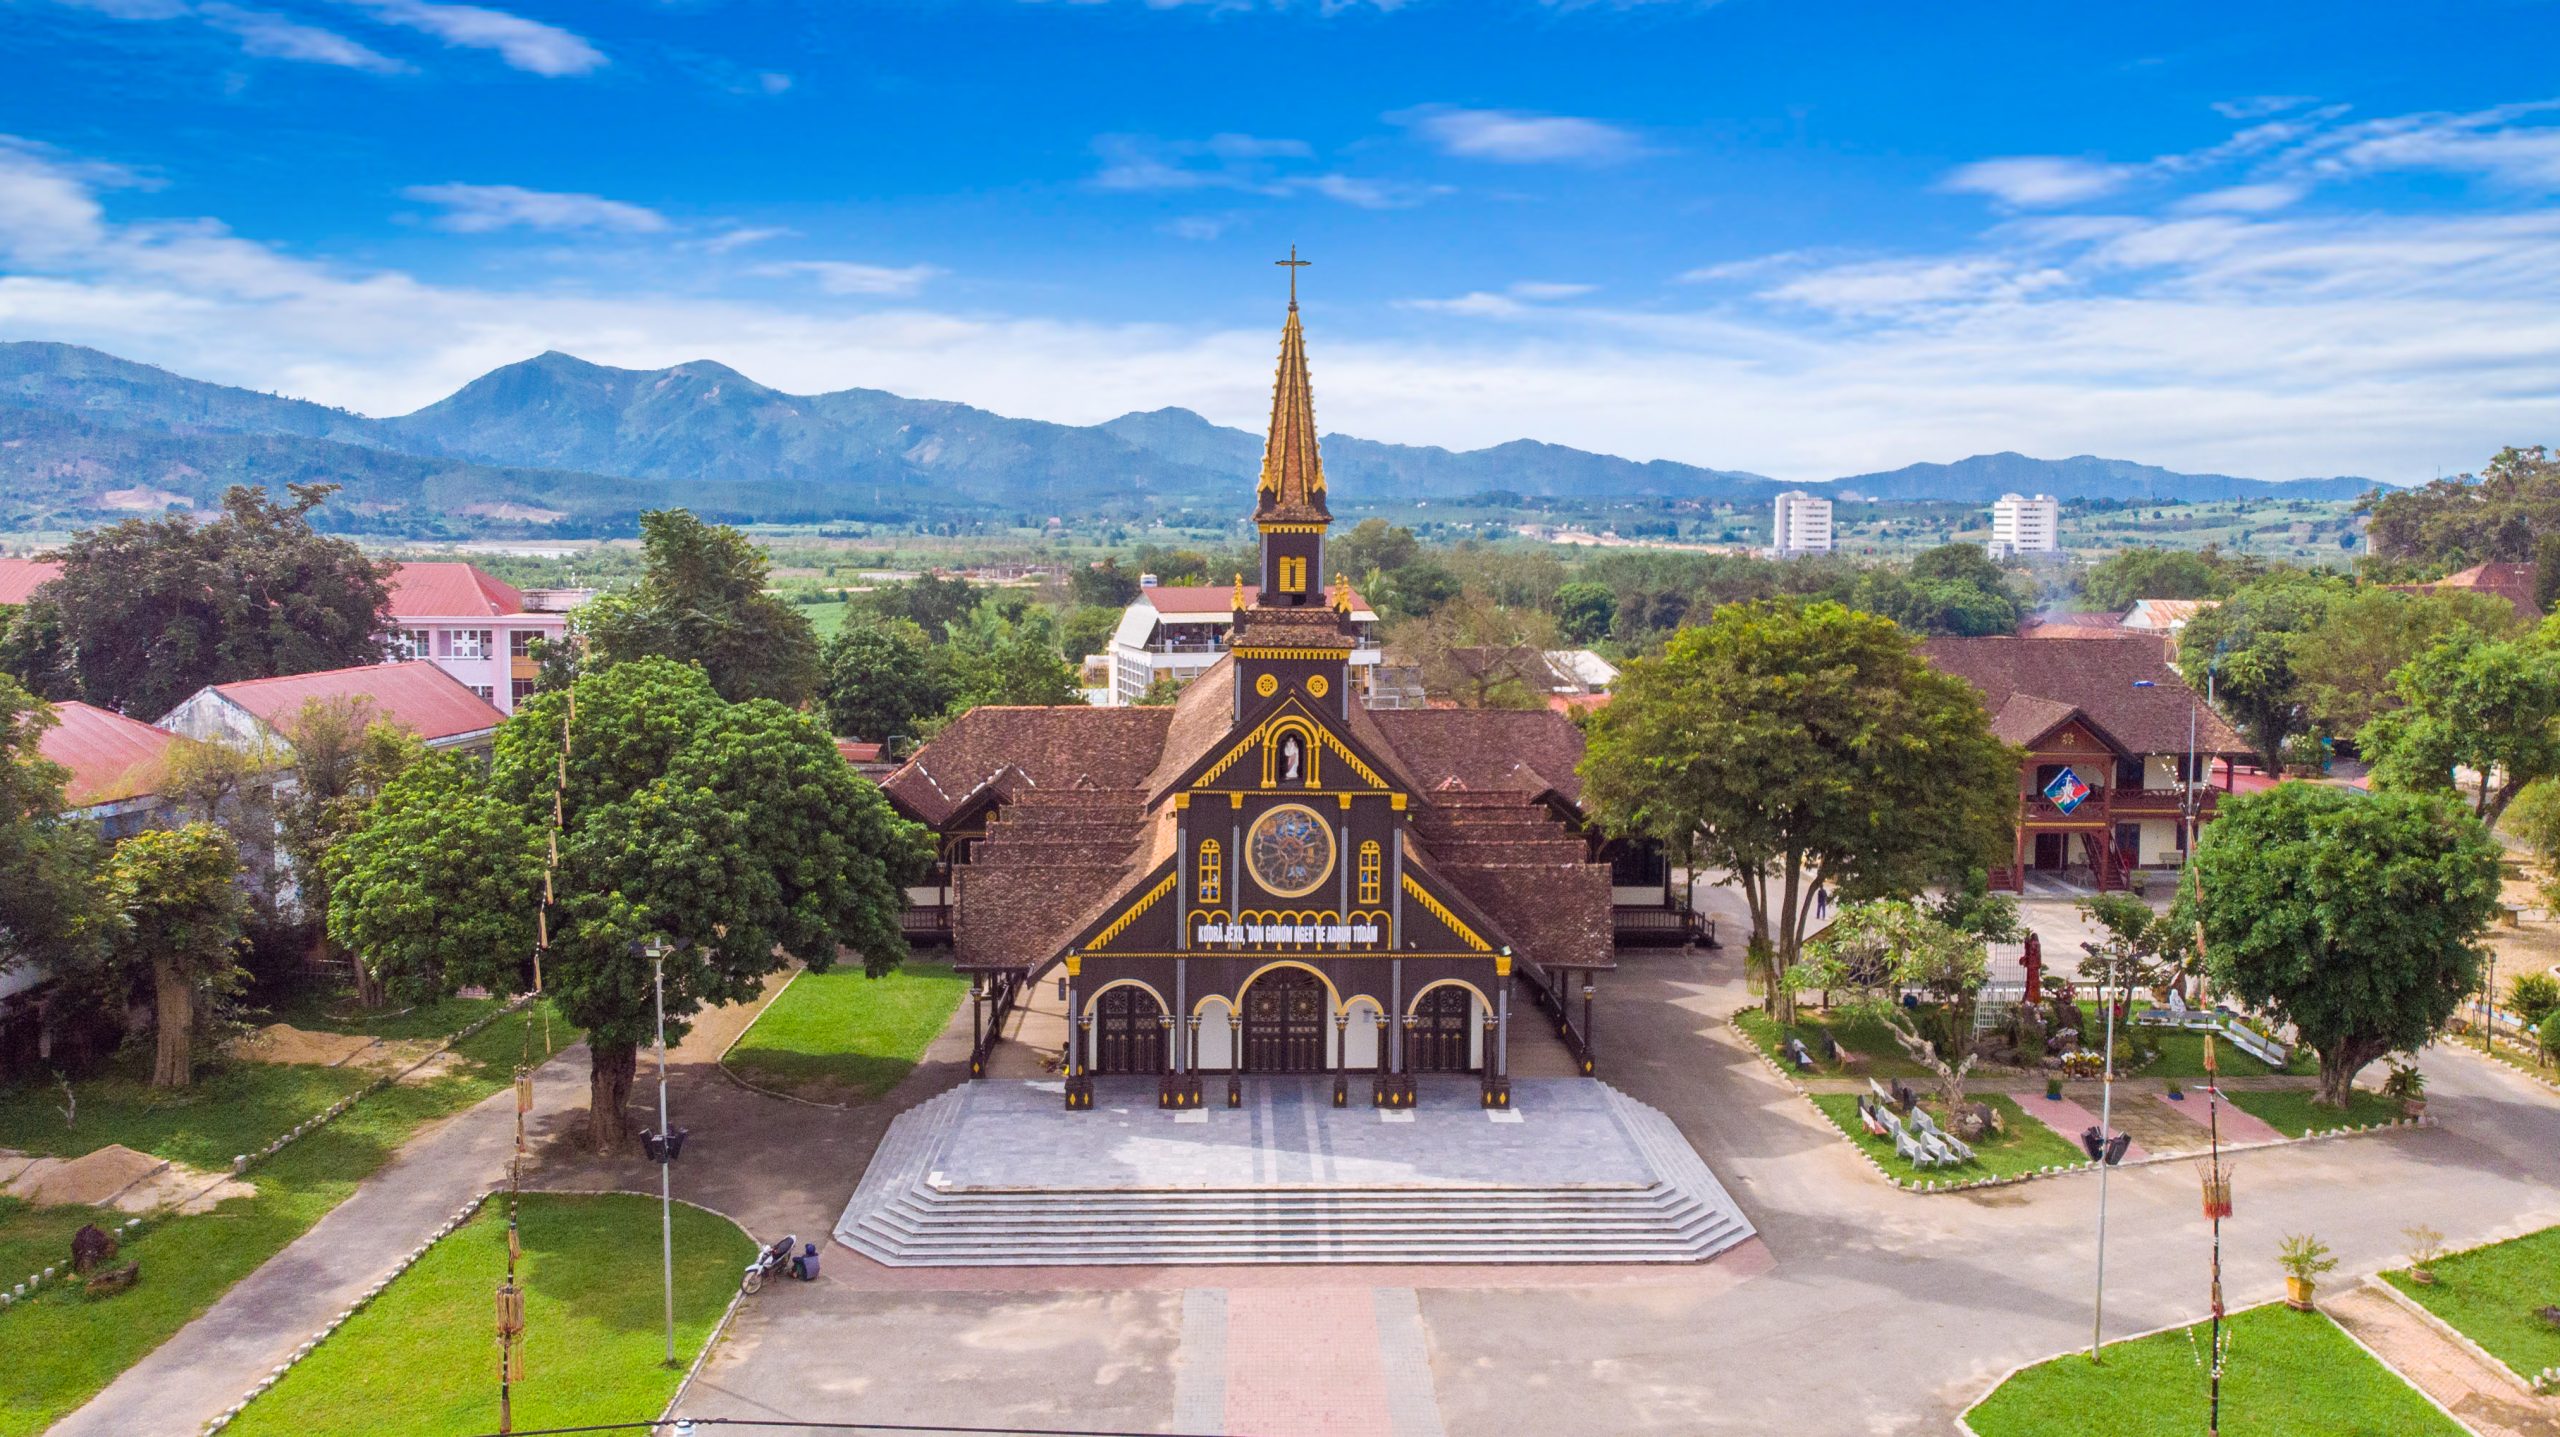 Nhà thờ gỗ Kon Tum